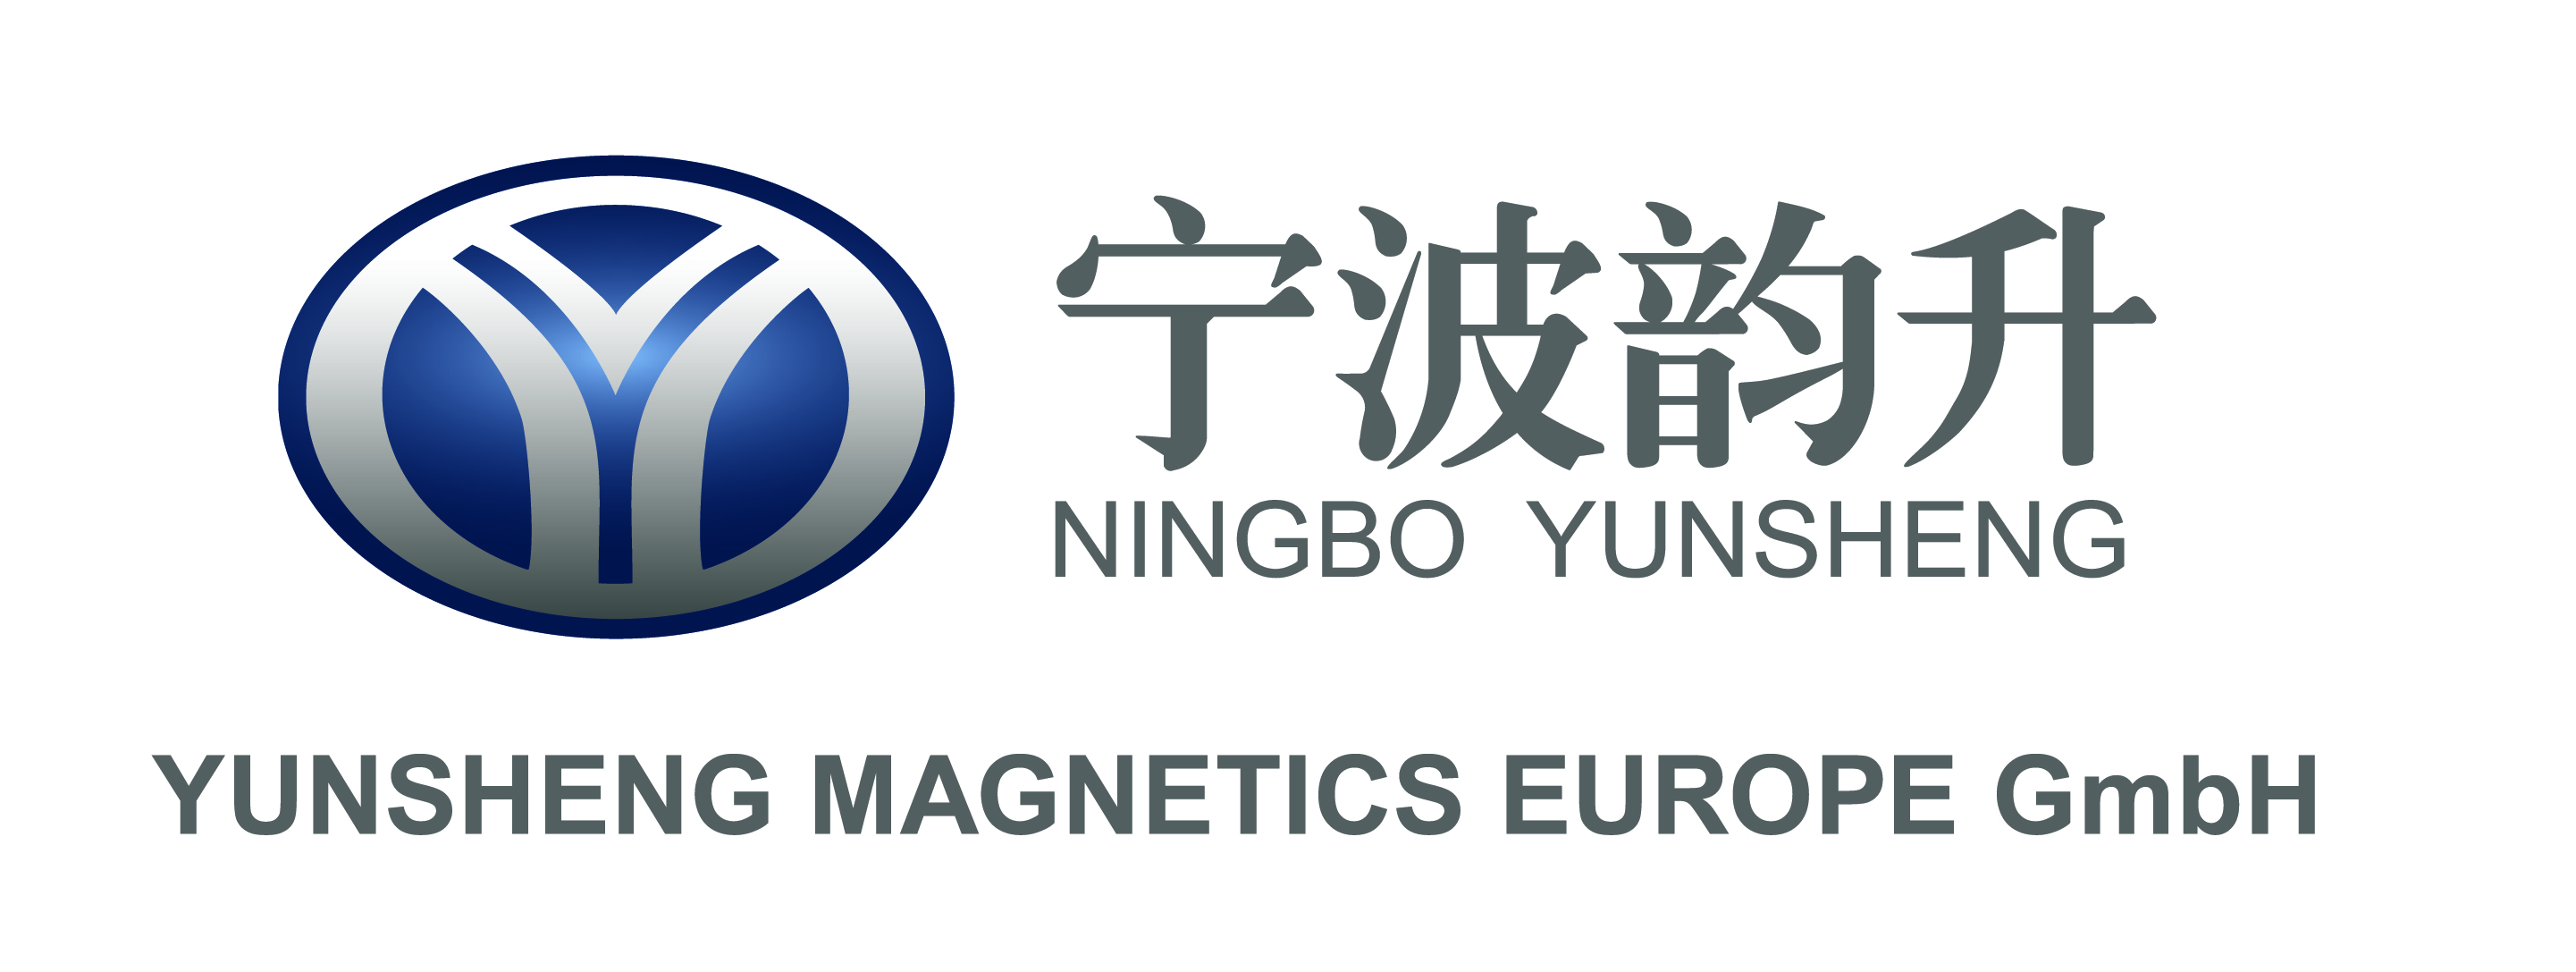 Yunsheng Magnetics Europe GmbH